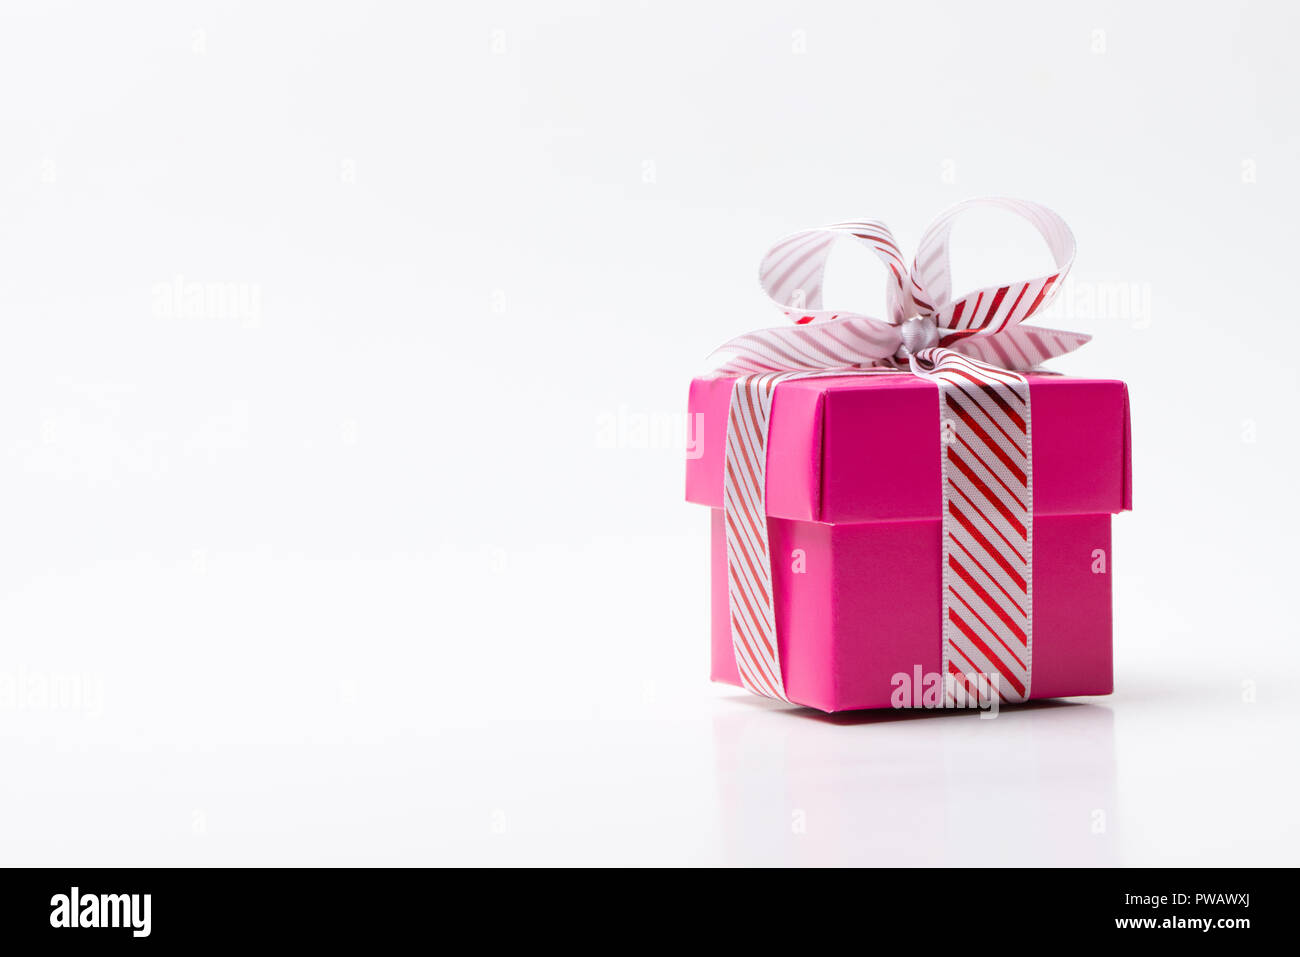 Caja de regalo rosa atado con cinta de color blanco con franja roja  Fotografía de stock - Alamy